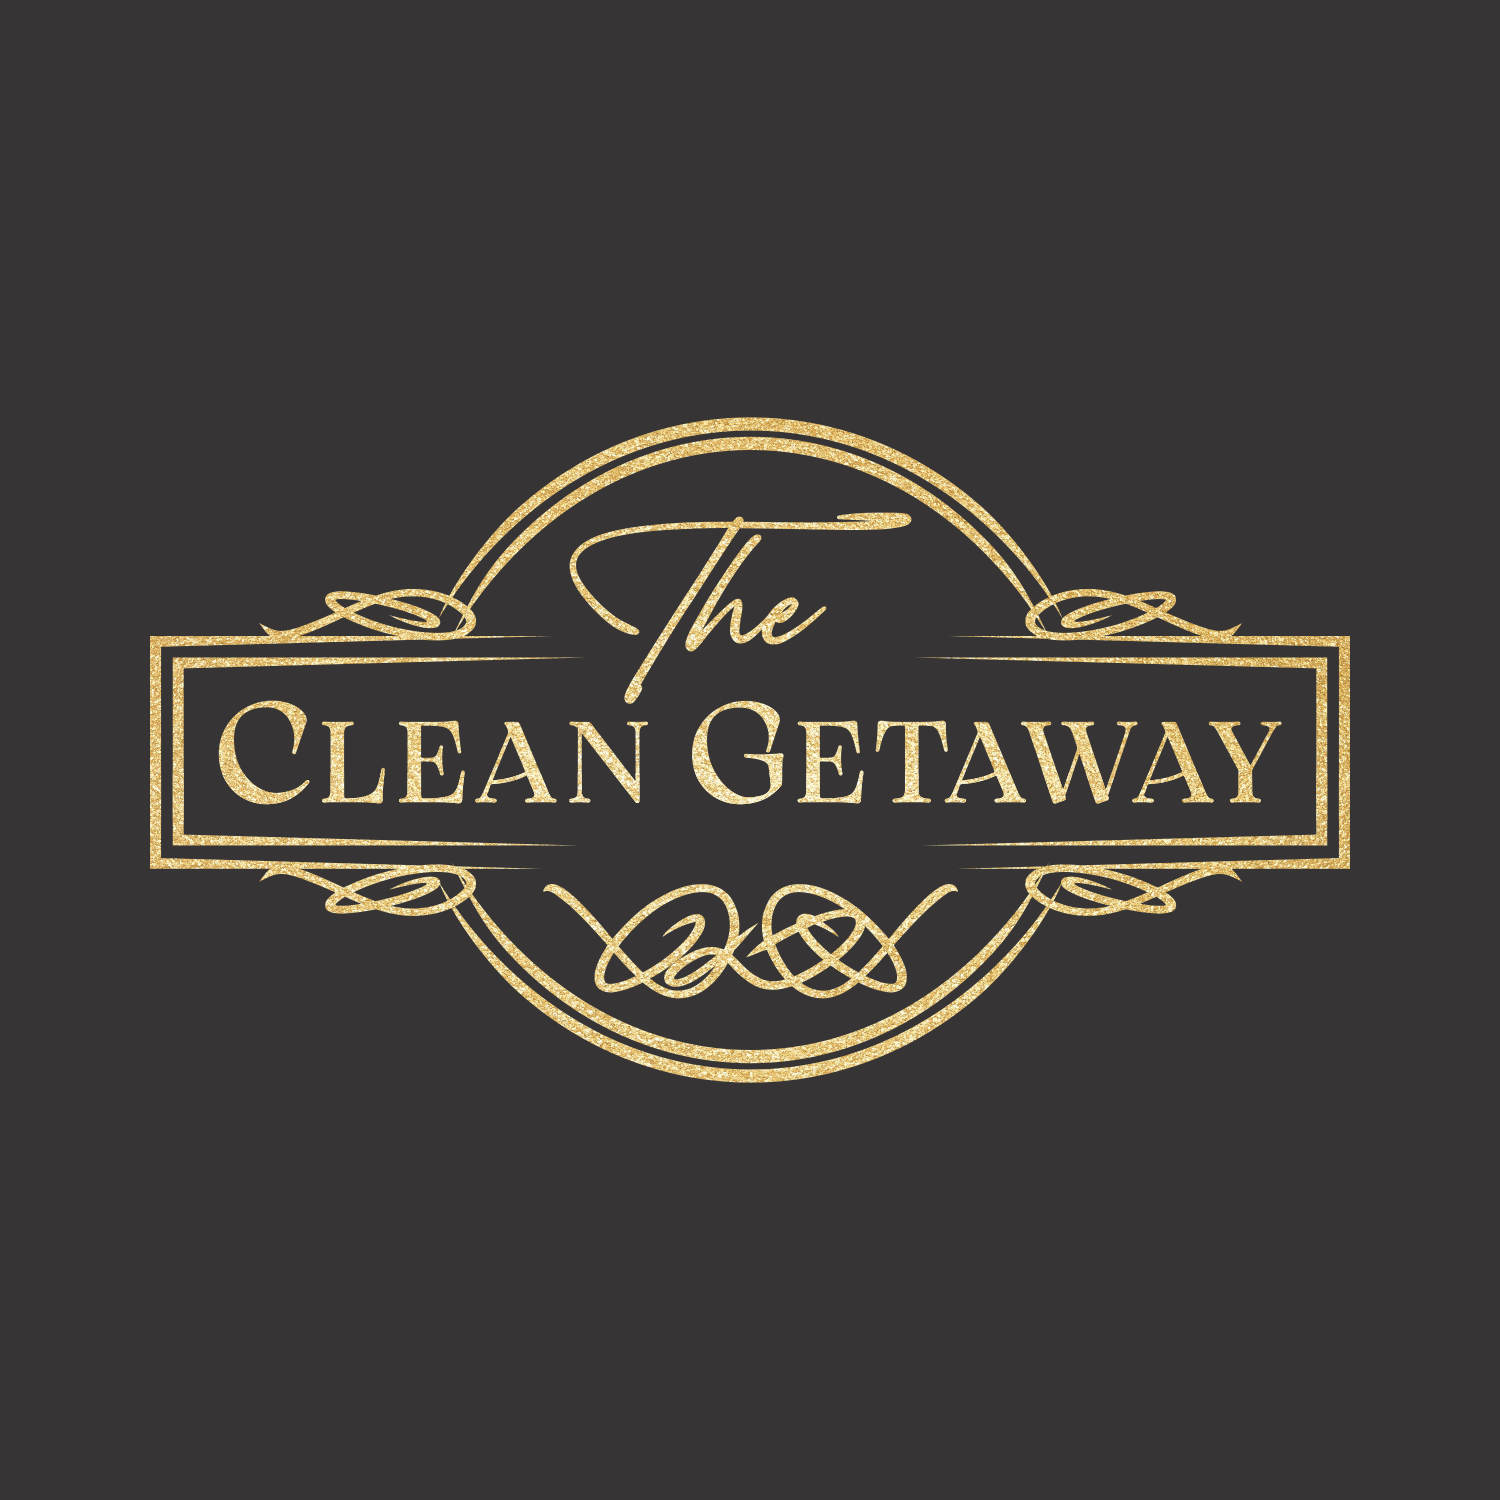 The Clean Getaway